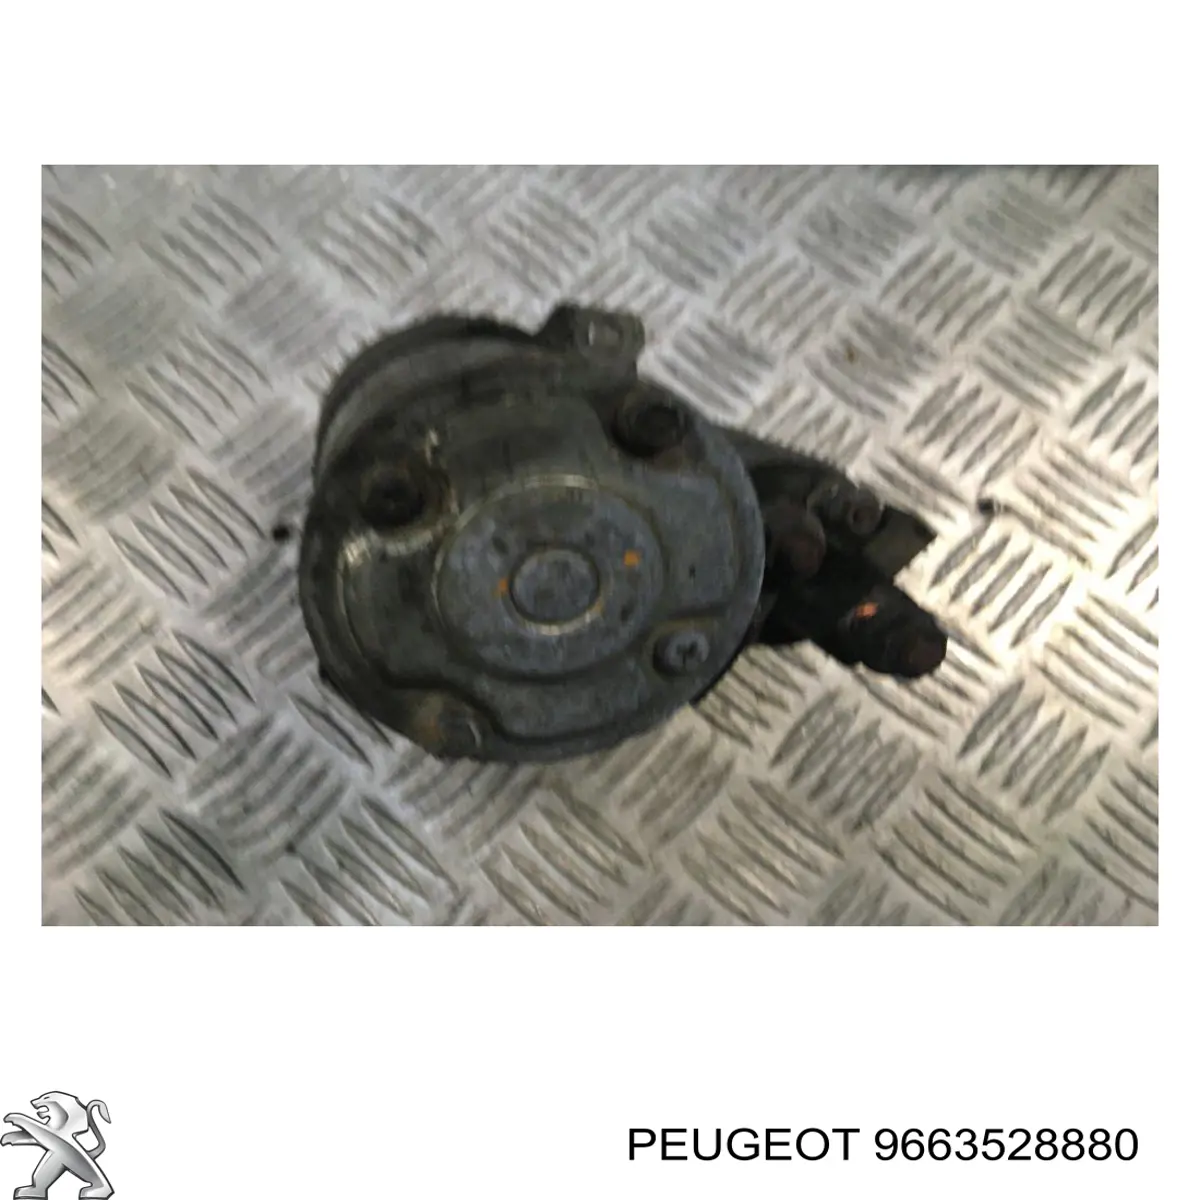 9663528880 Peugeot/Citroen motor de arranque